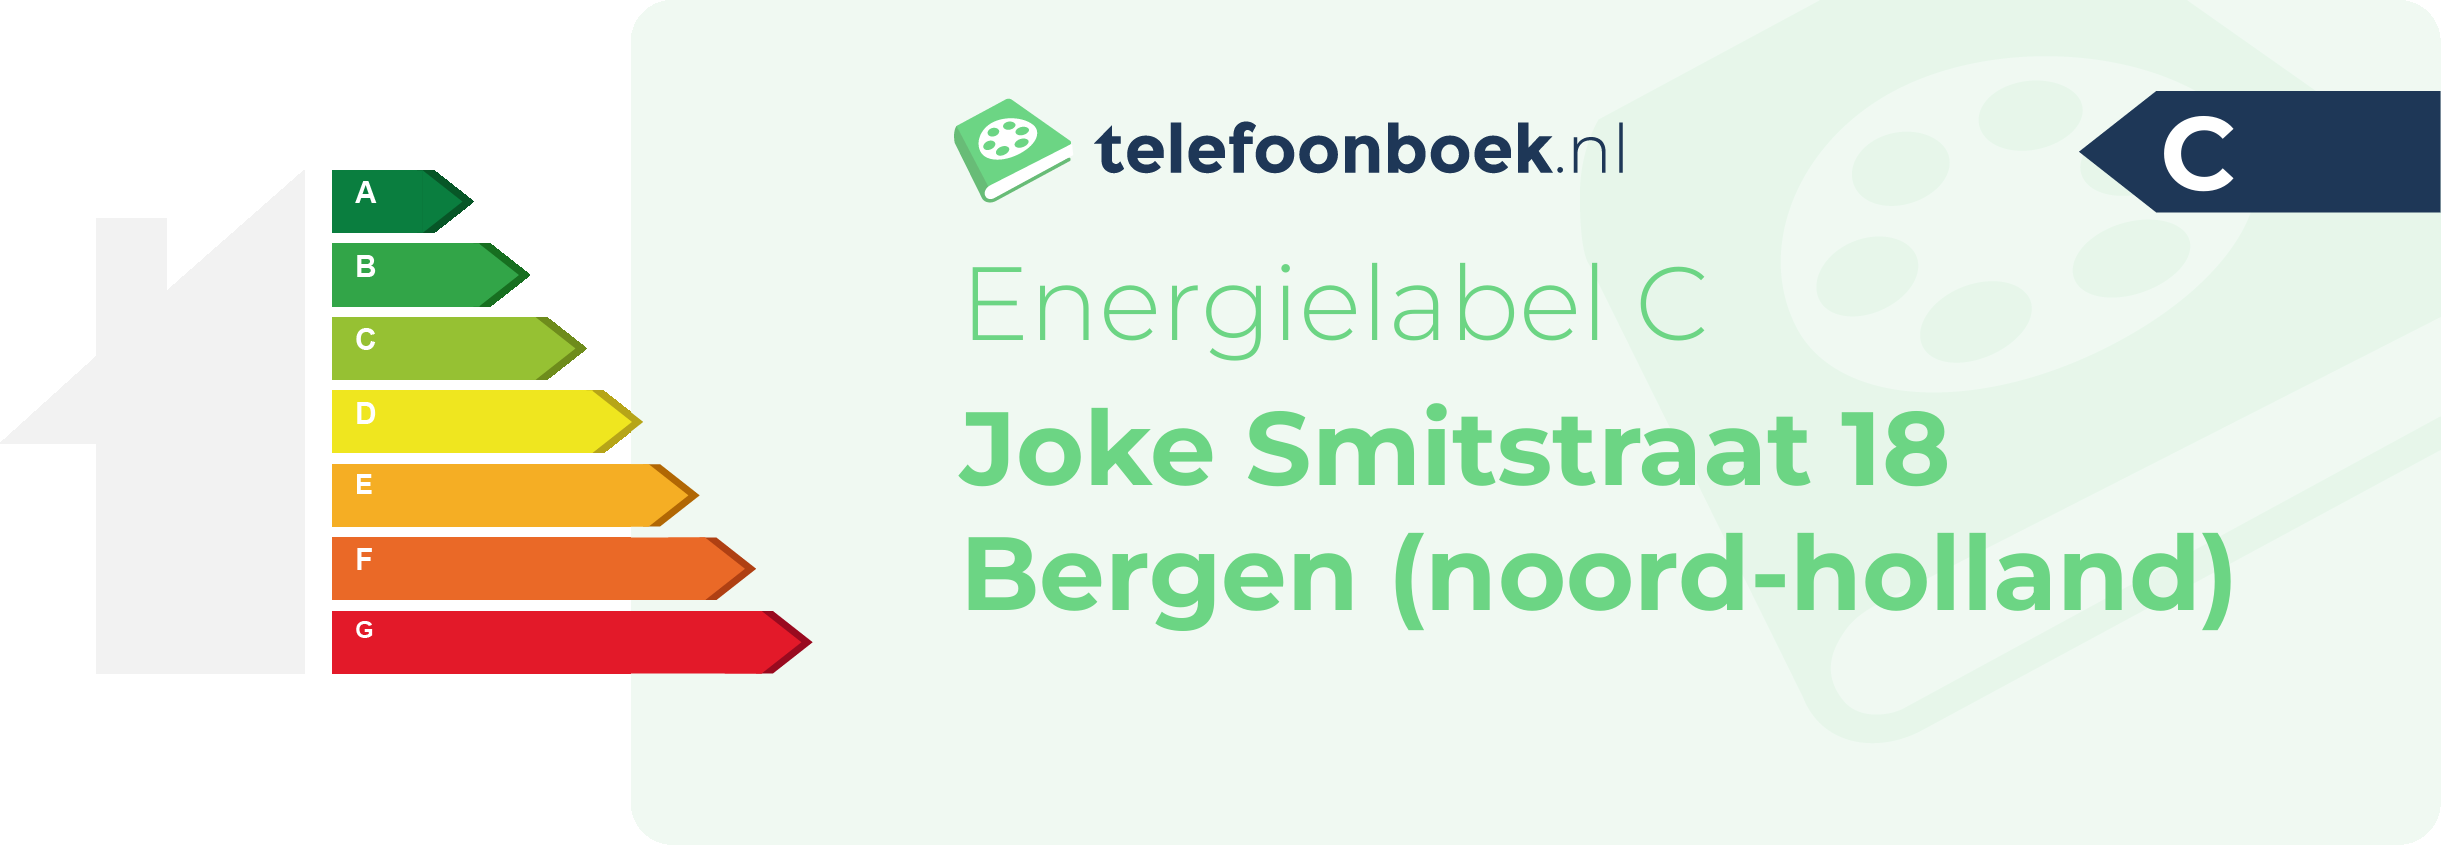 Energielabel Joke Smitstraat 18 Bergen (Noord-Holland)